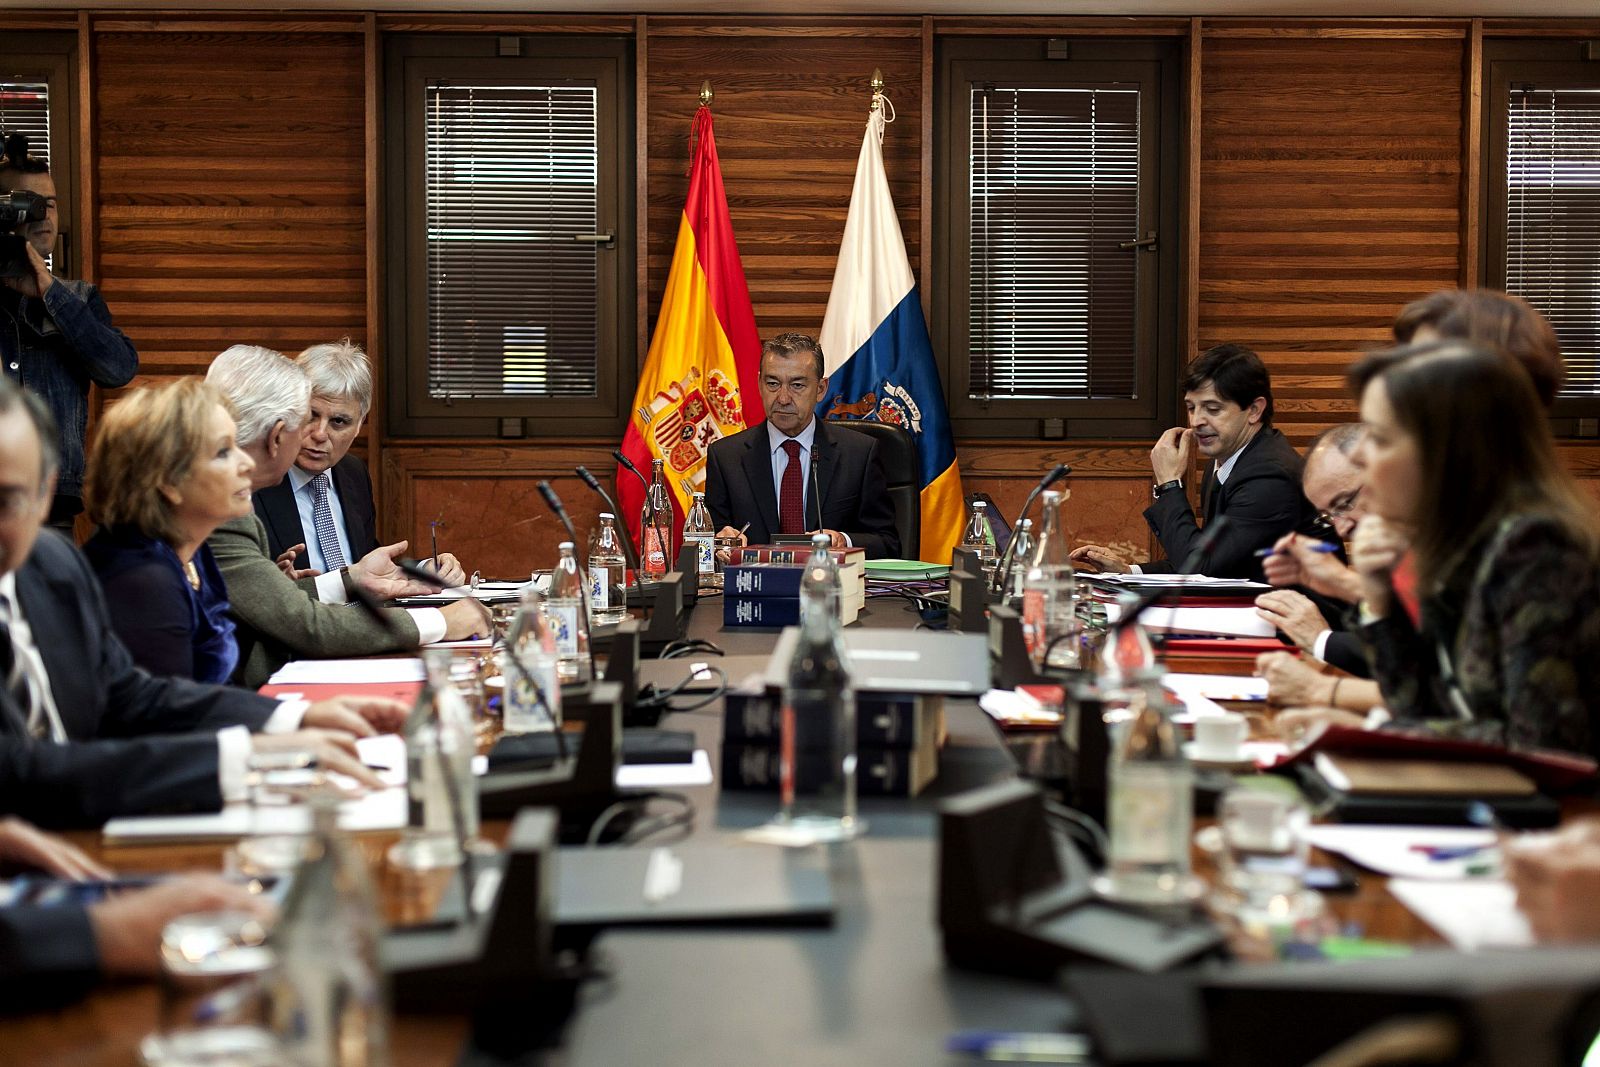 El presidente del Gobierno Canario, Paulino Rivero, preside la reunión del Consejo de Gobierno del 13 de febrero